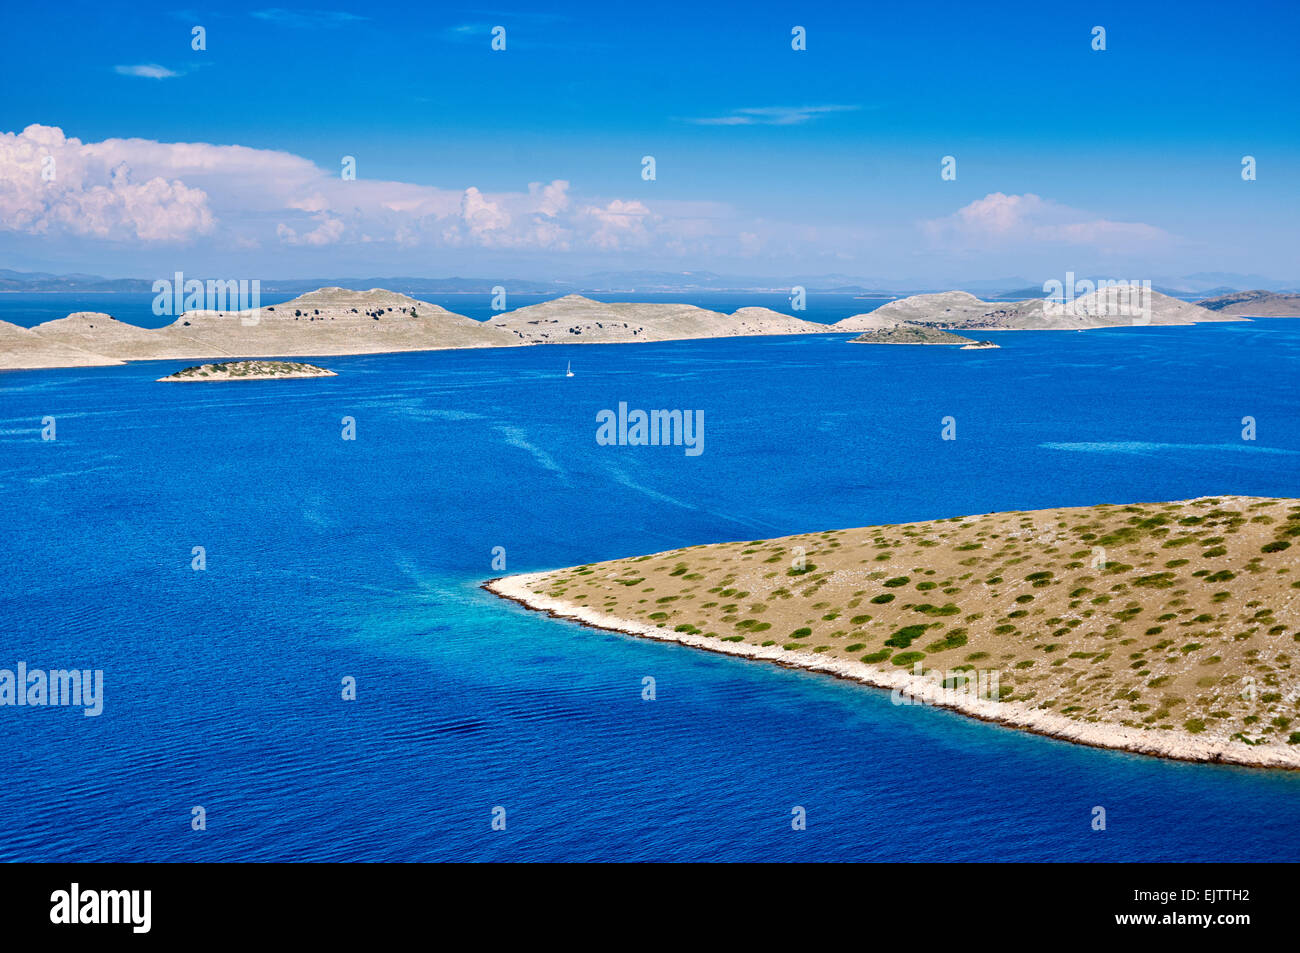 Belle vista comme vu plus haut dans une forme à l'intérieur de l'île Parc National de Kornati dans la partie croate de la mer Adriatique Banque D'Images